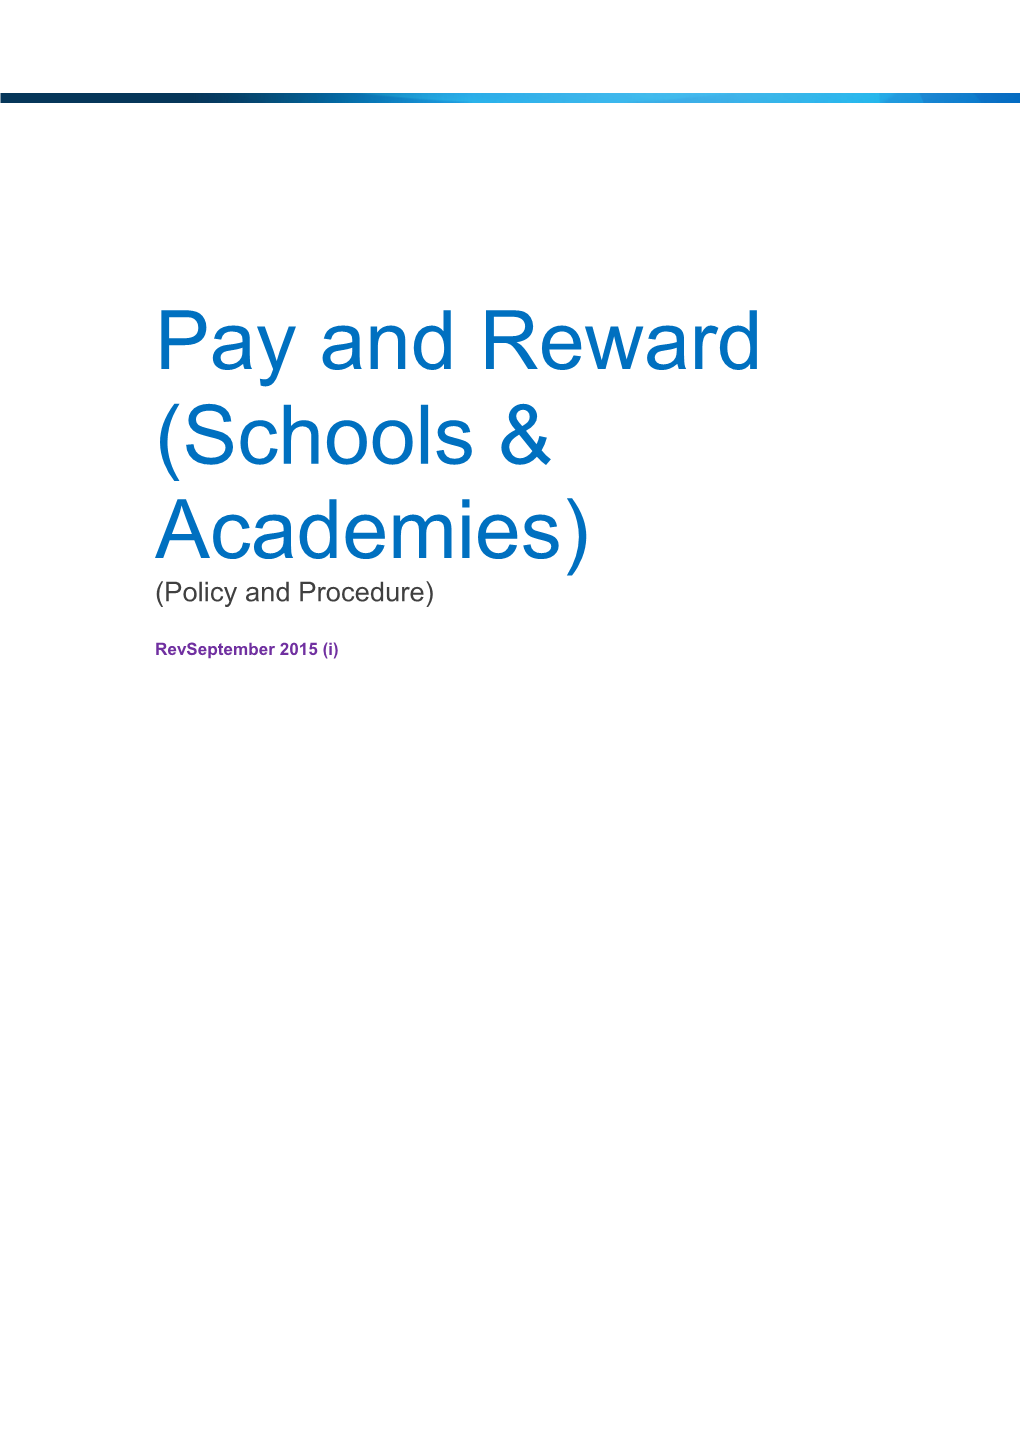 Pay and Reward (Schools & Academies)